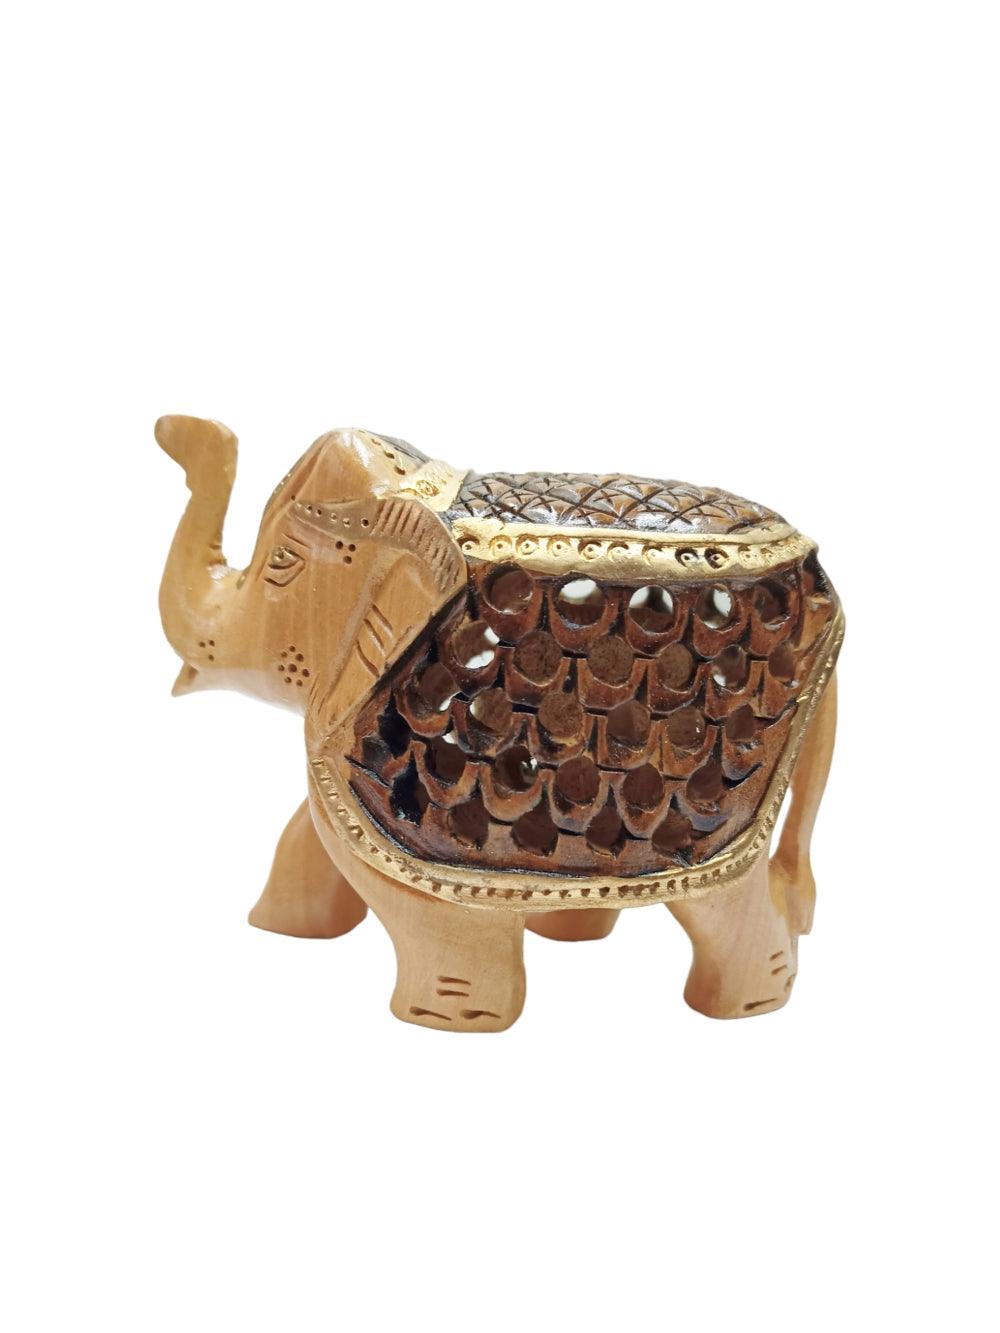 Wooden Elephant | Elephant 4 Piece Set | Handicrafts - ZANSKAR ARTS